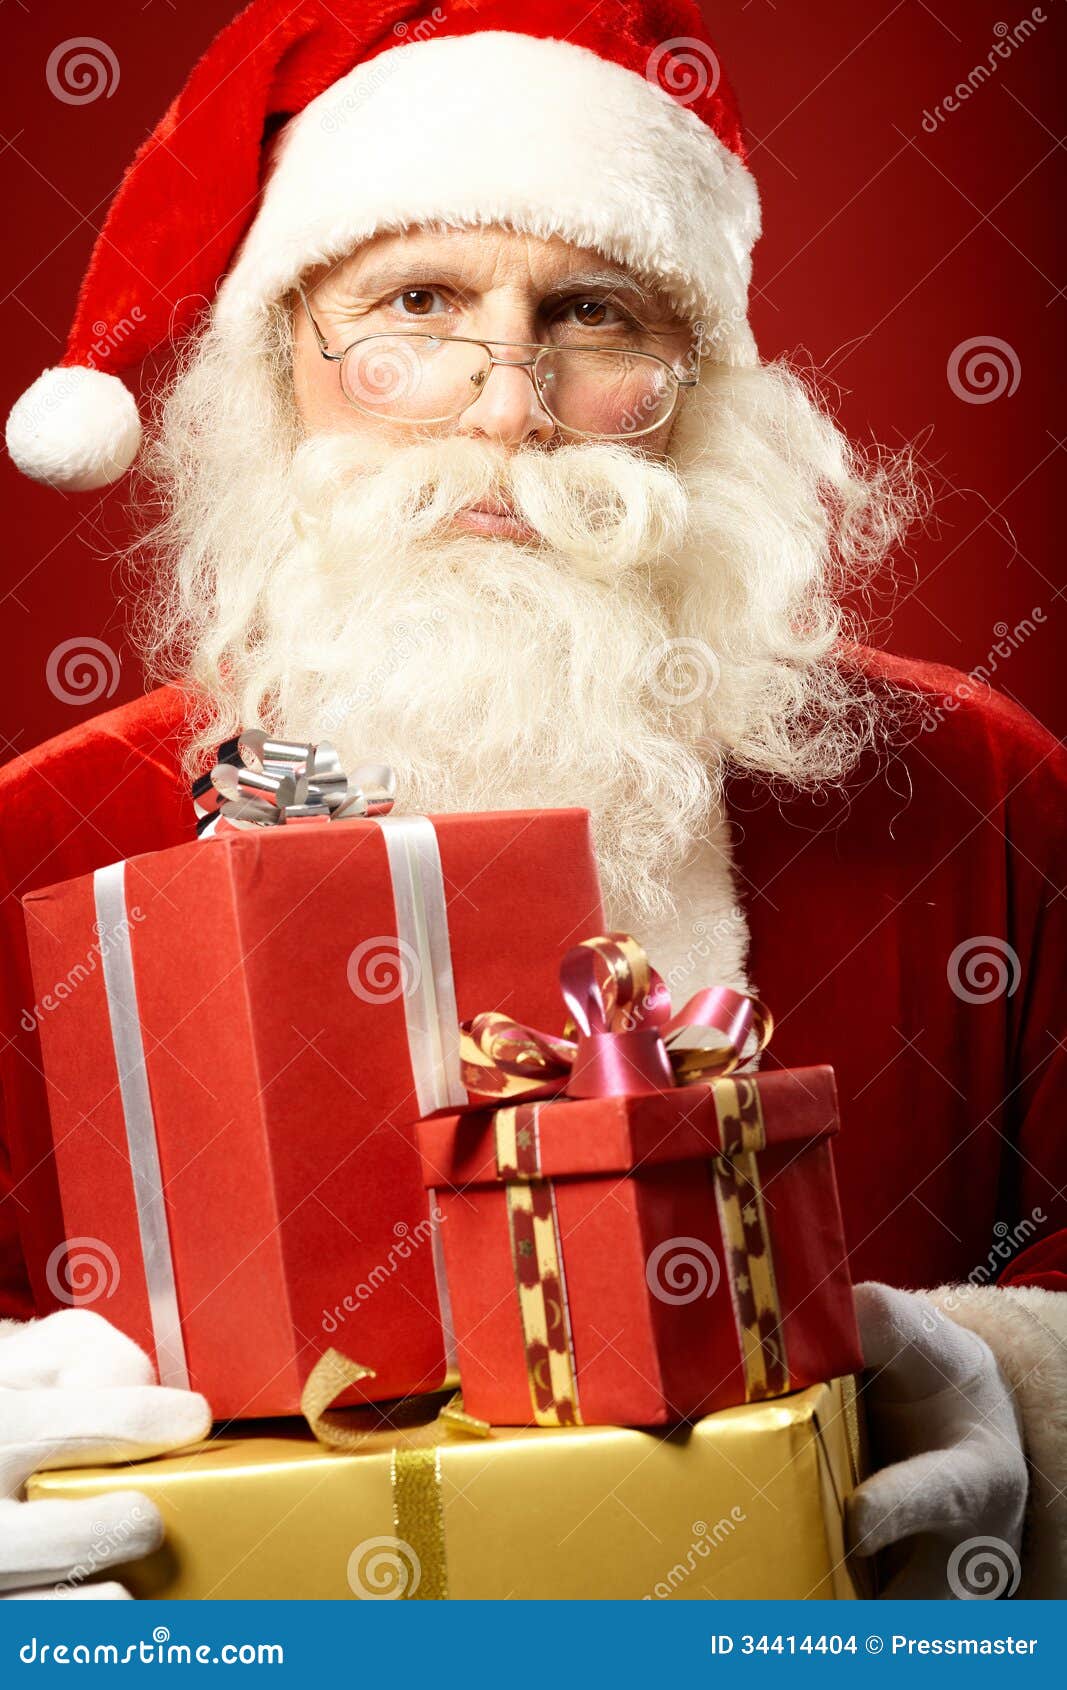 Generous Santa